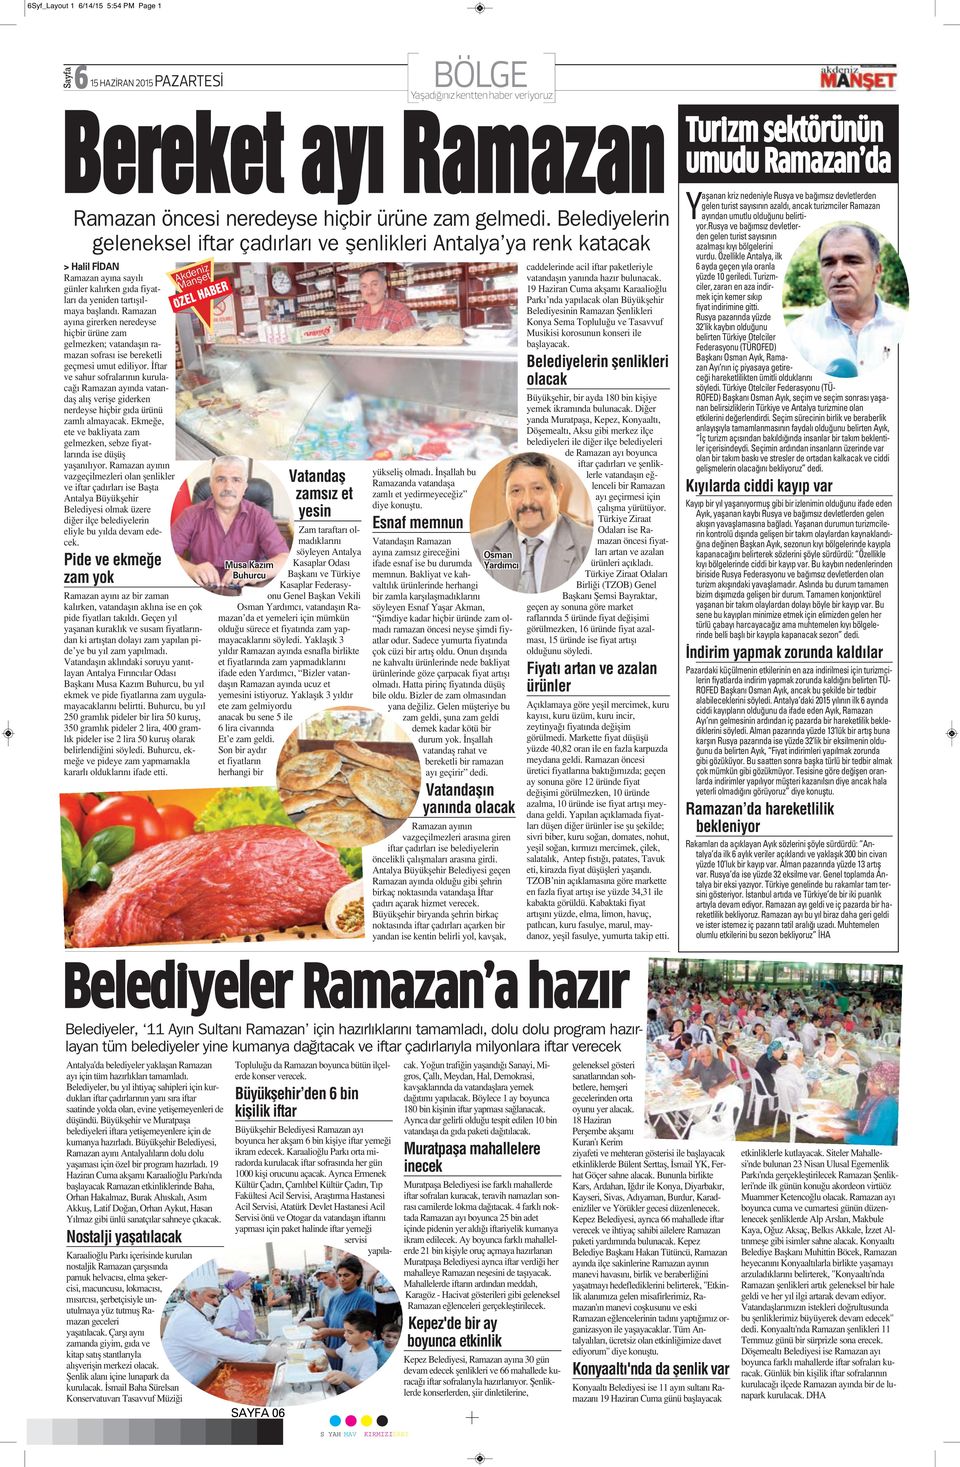 Belediyelerin geleneksel iftar çadırları ve şenlikleri Antalya ya renk katacak > Halil FİDAN Ramazan ayına sayılı günler kalırken gıda fiyatları da yeniden tartışılmaya başlandı.